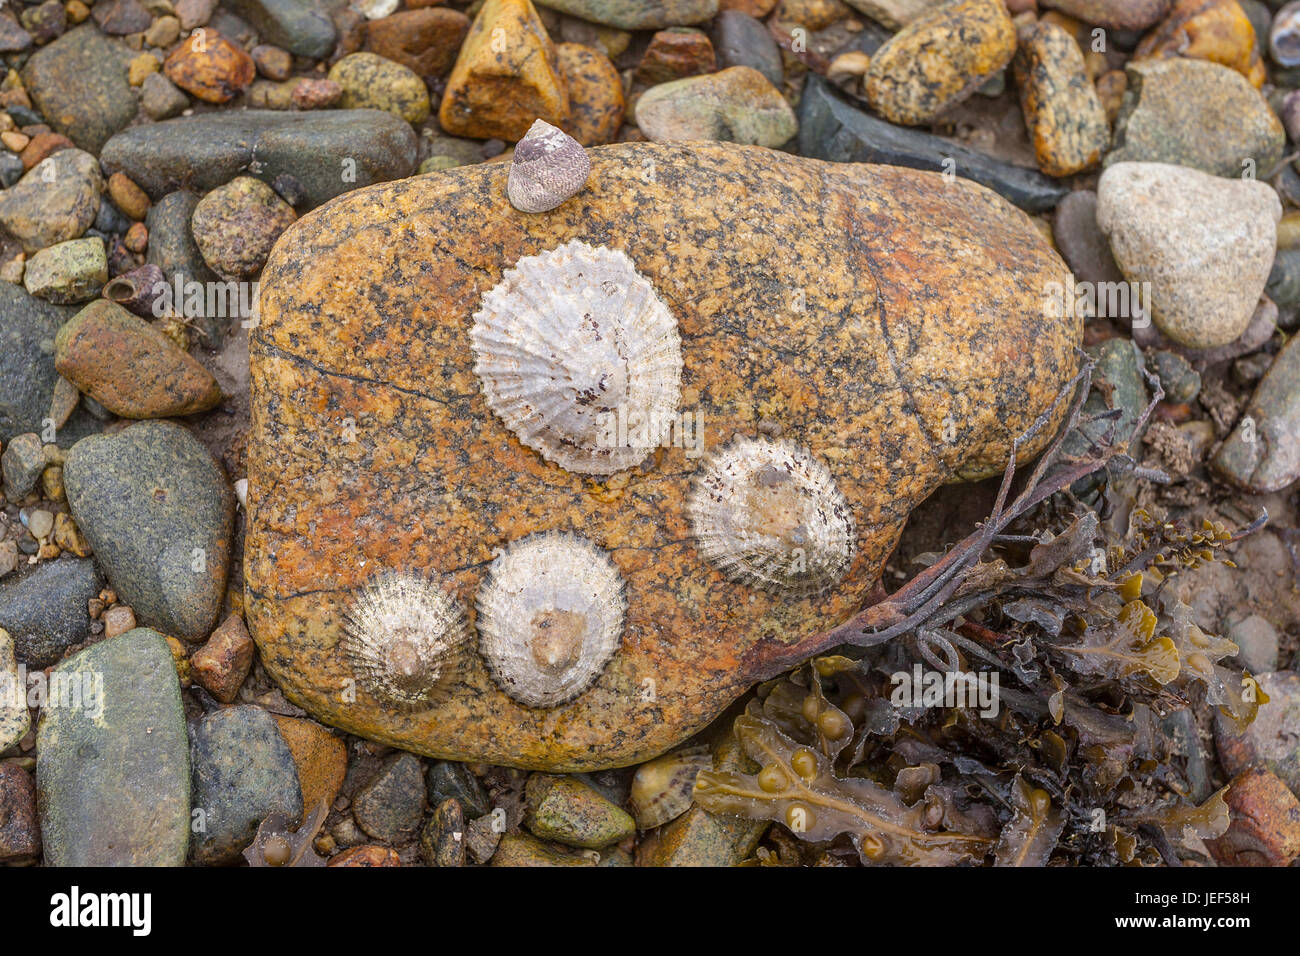 Limpet comune, Politica europea comune in materia di limpet (Patella vulgata) su roccia, (Patellidae), Brittany, Francia Foto Stock